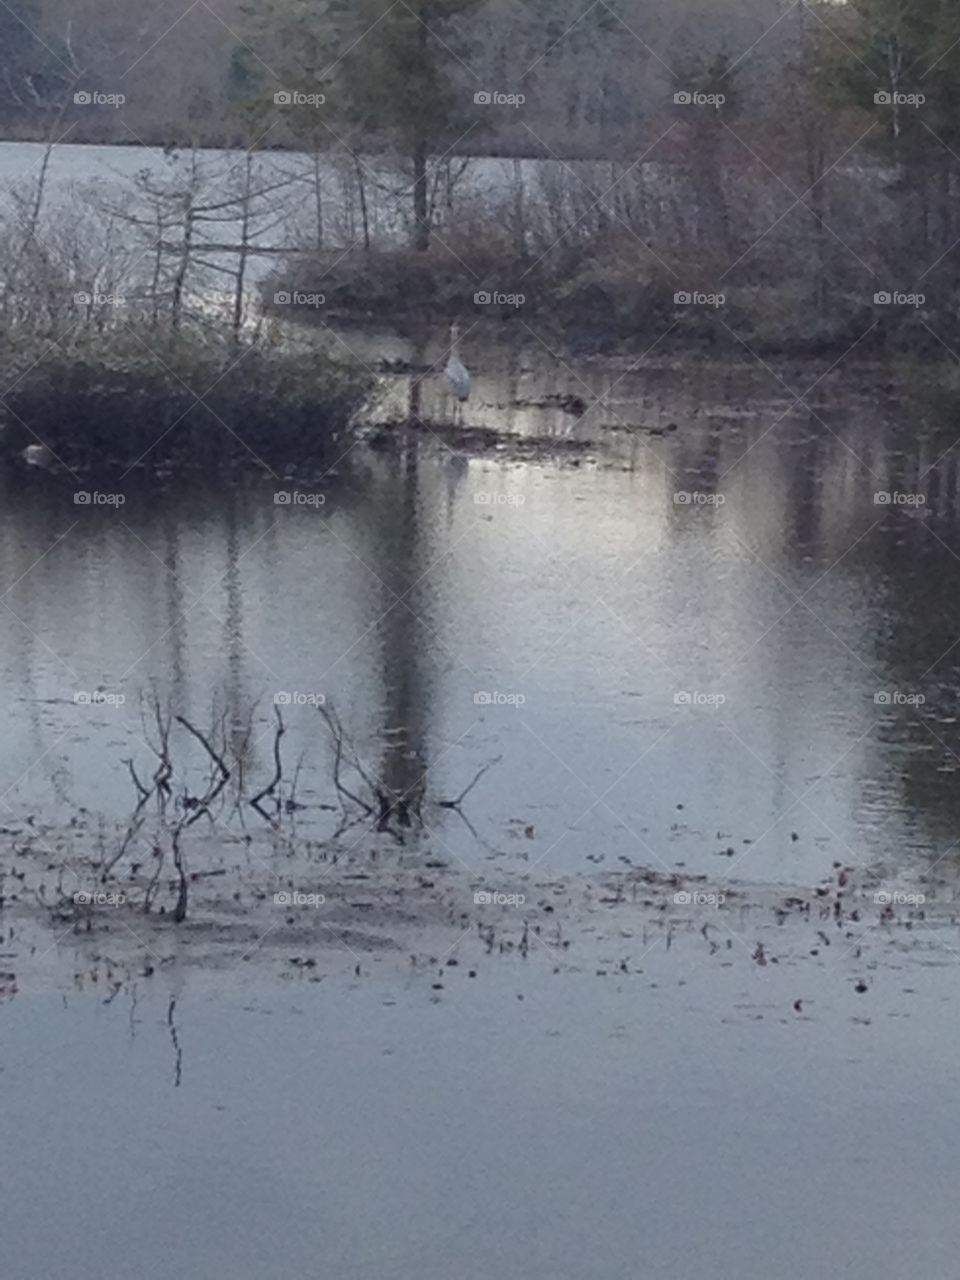 Blue Heron. Heron in pond fishing